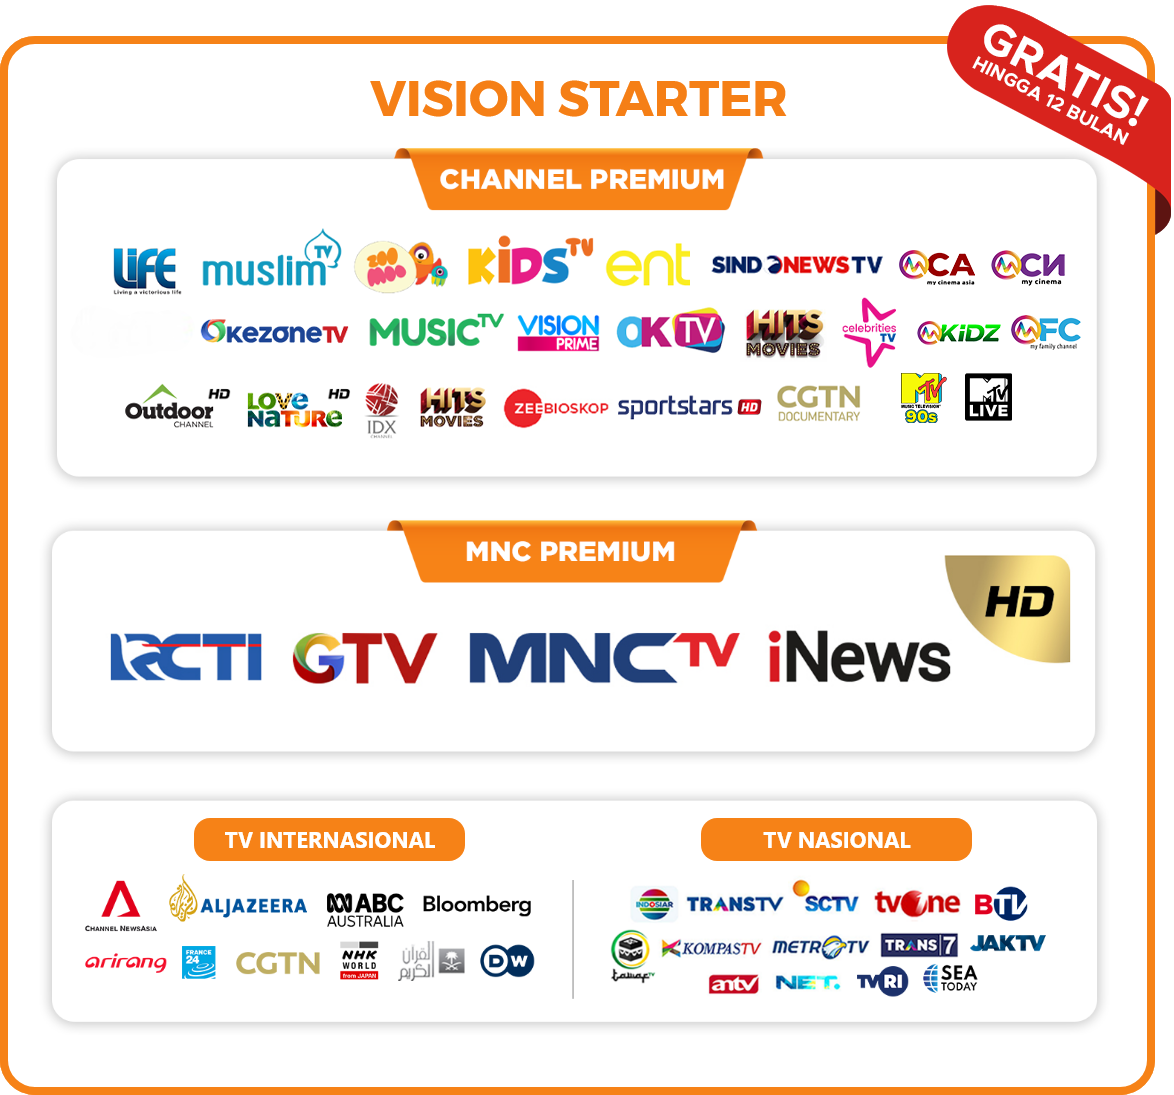 Channel vision starter